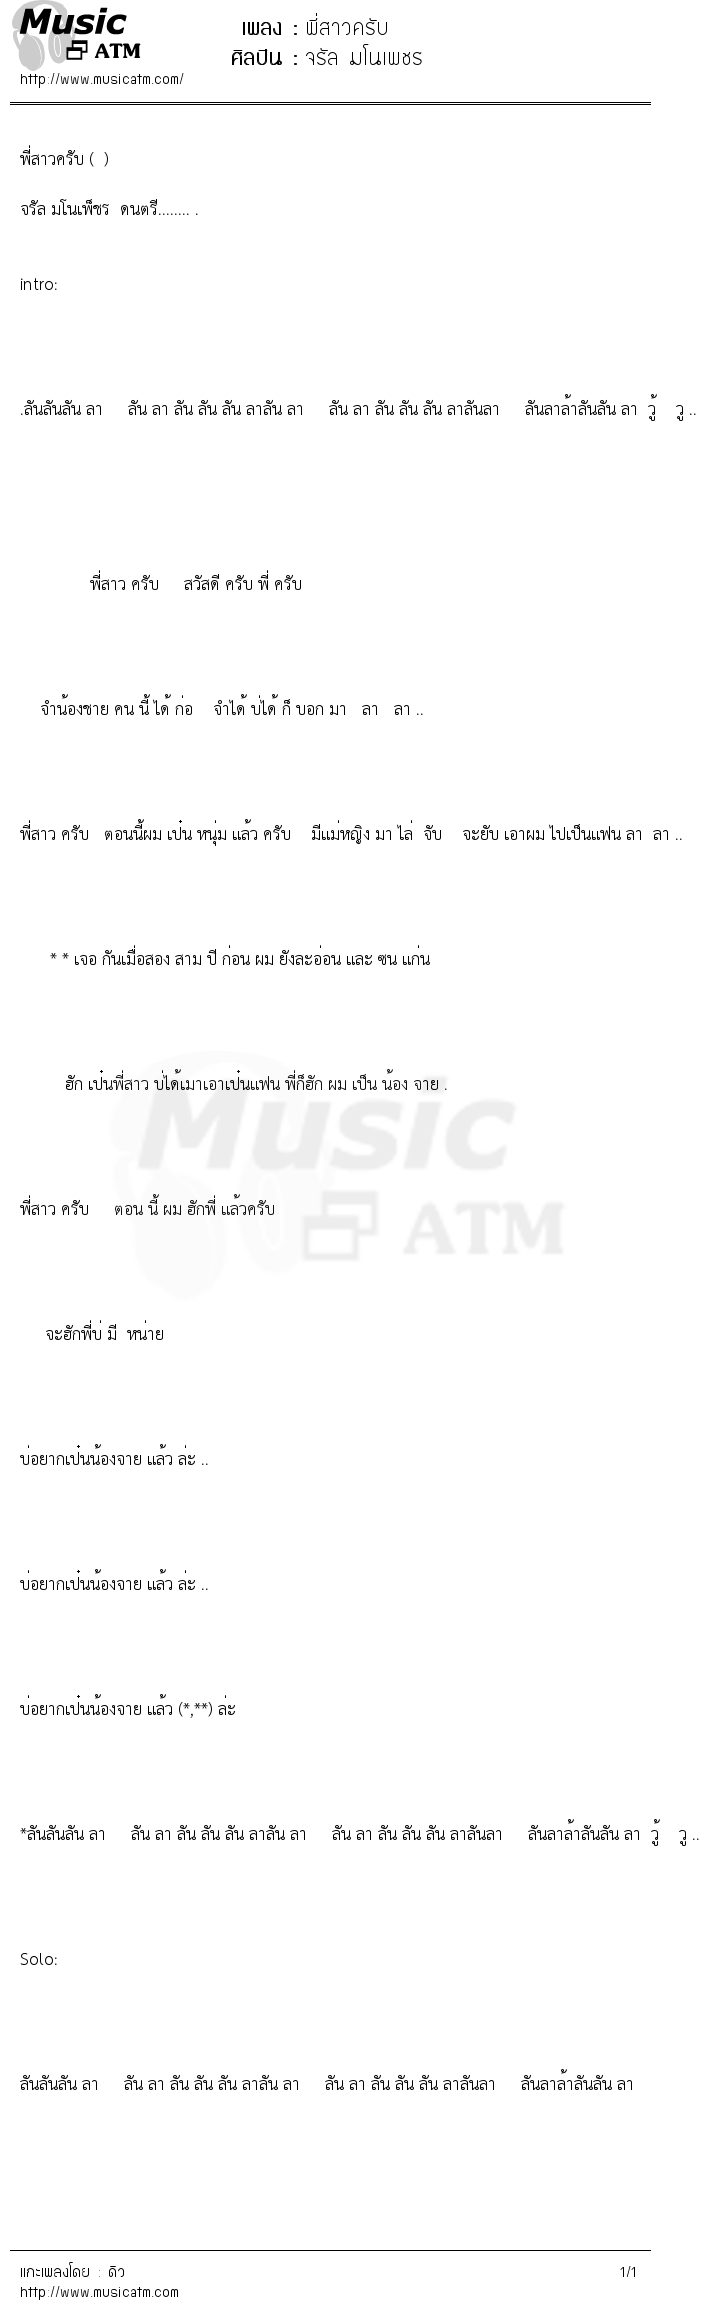 เนื้อเพลง พี่สาวครับ - จรัล มโนเพชร | เพลงไทย